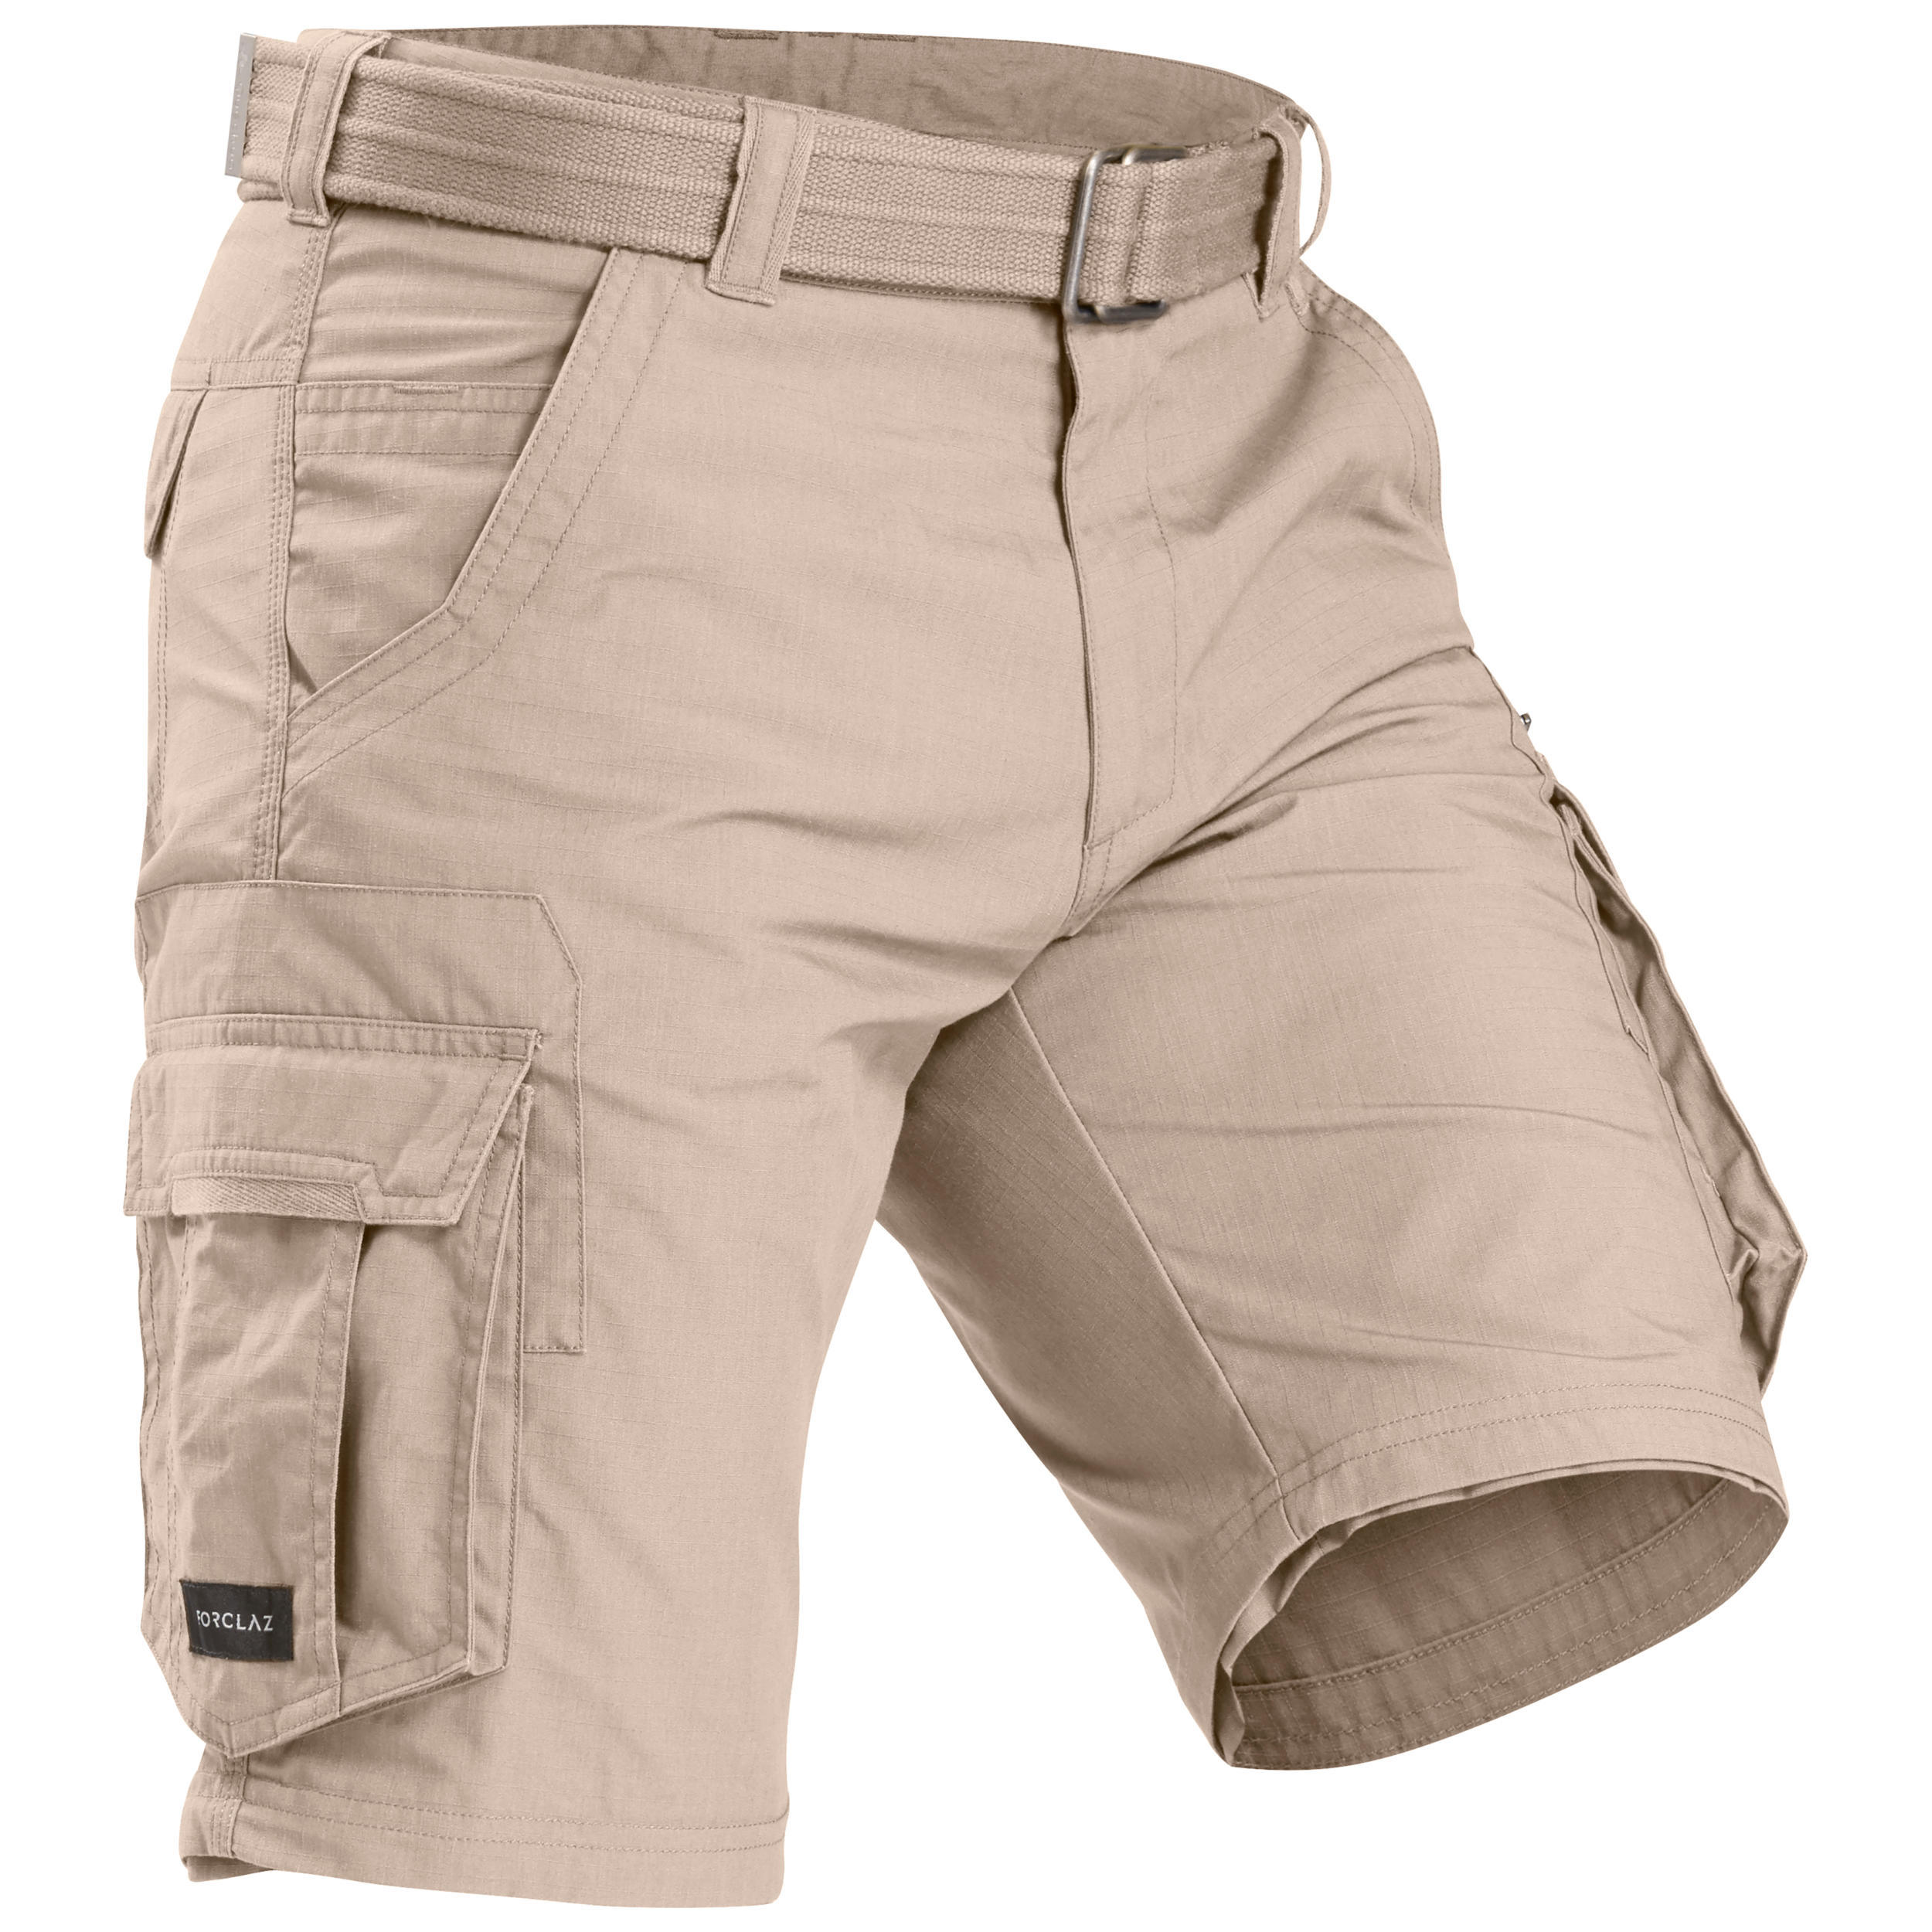 Buy Men's Dark Grey Convertible Travel Trousers Online | Decathlon